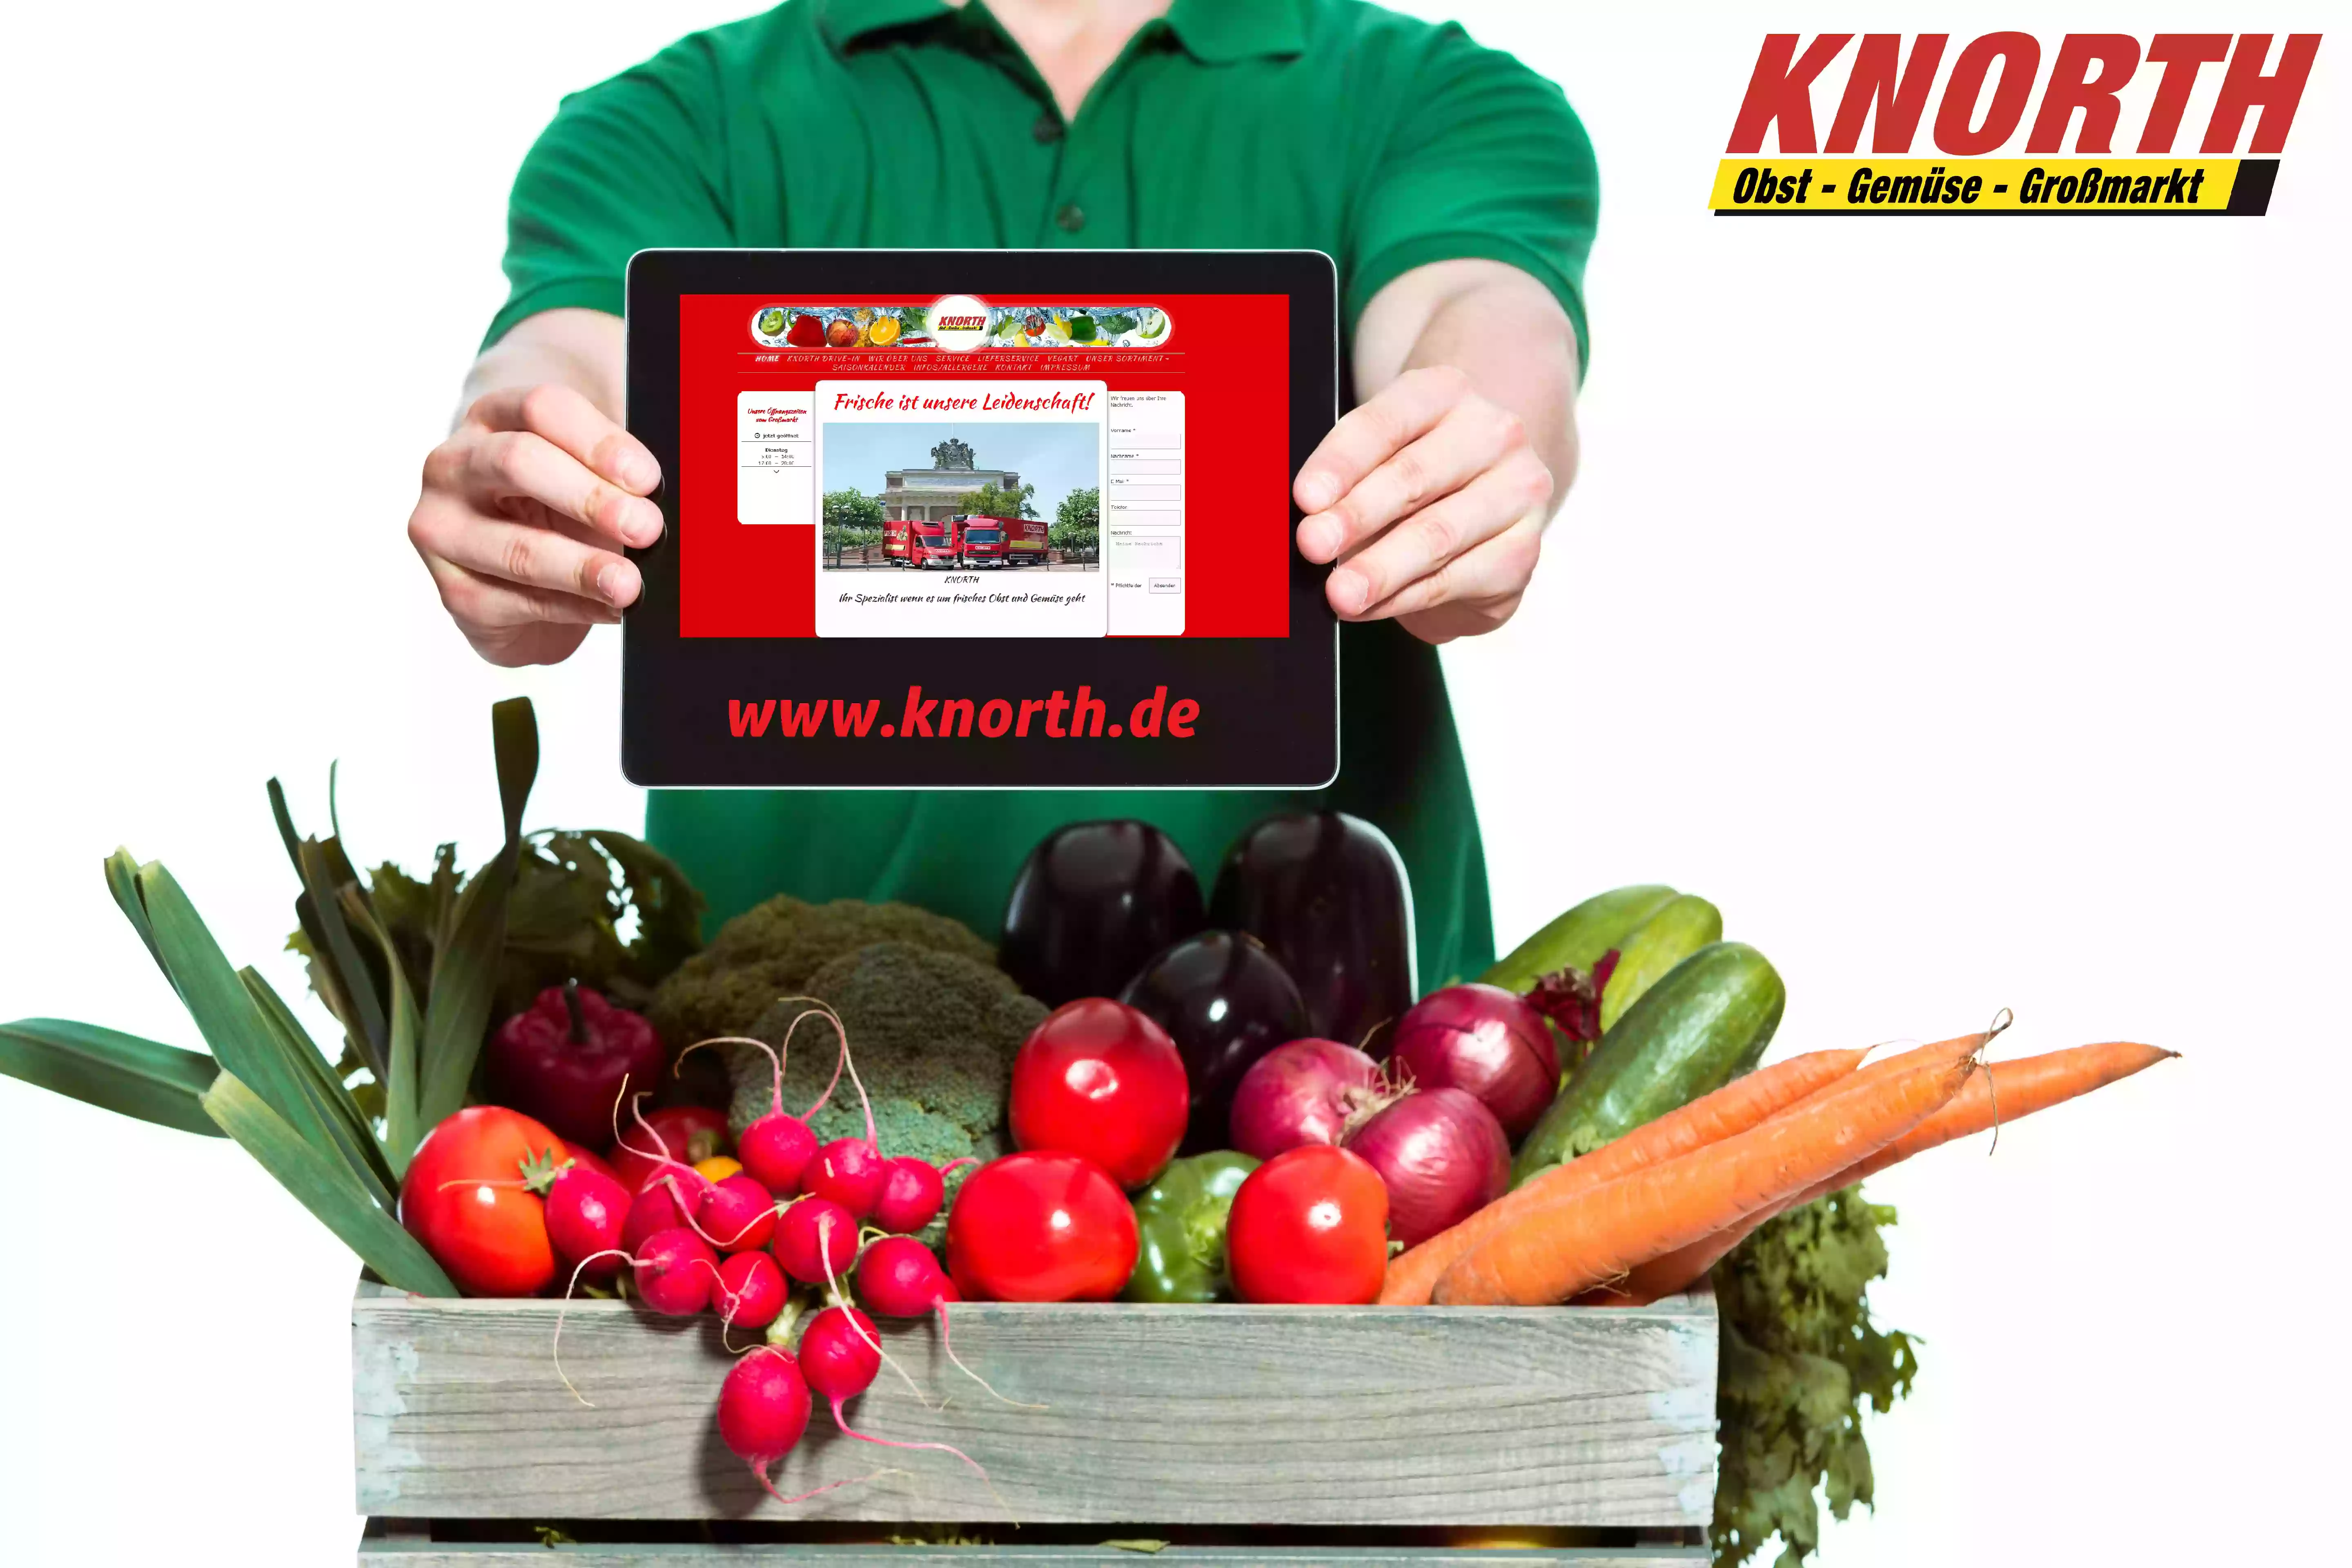 Knorth Obst- und Gemüsegroßmarkt GmbH